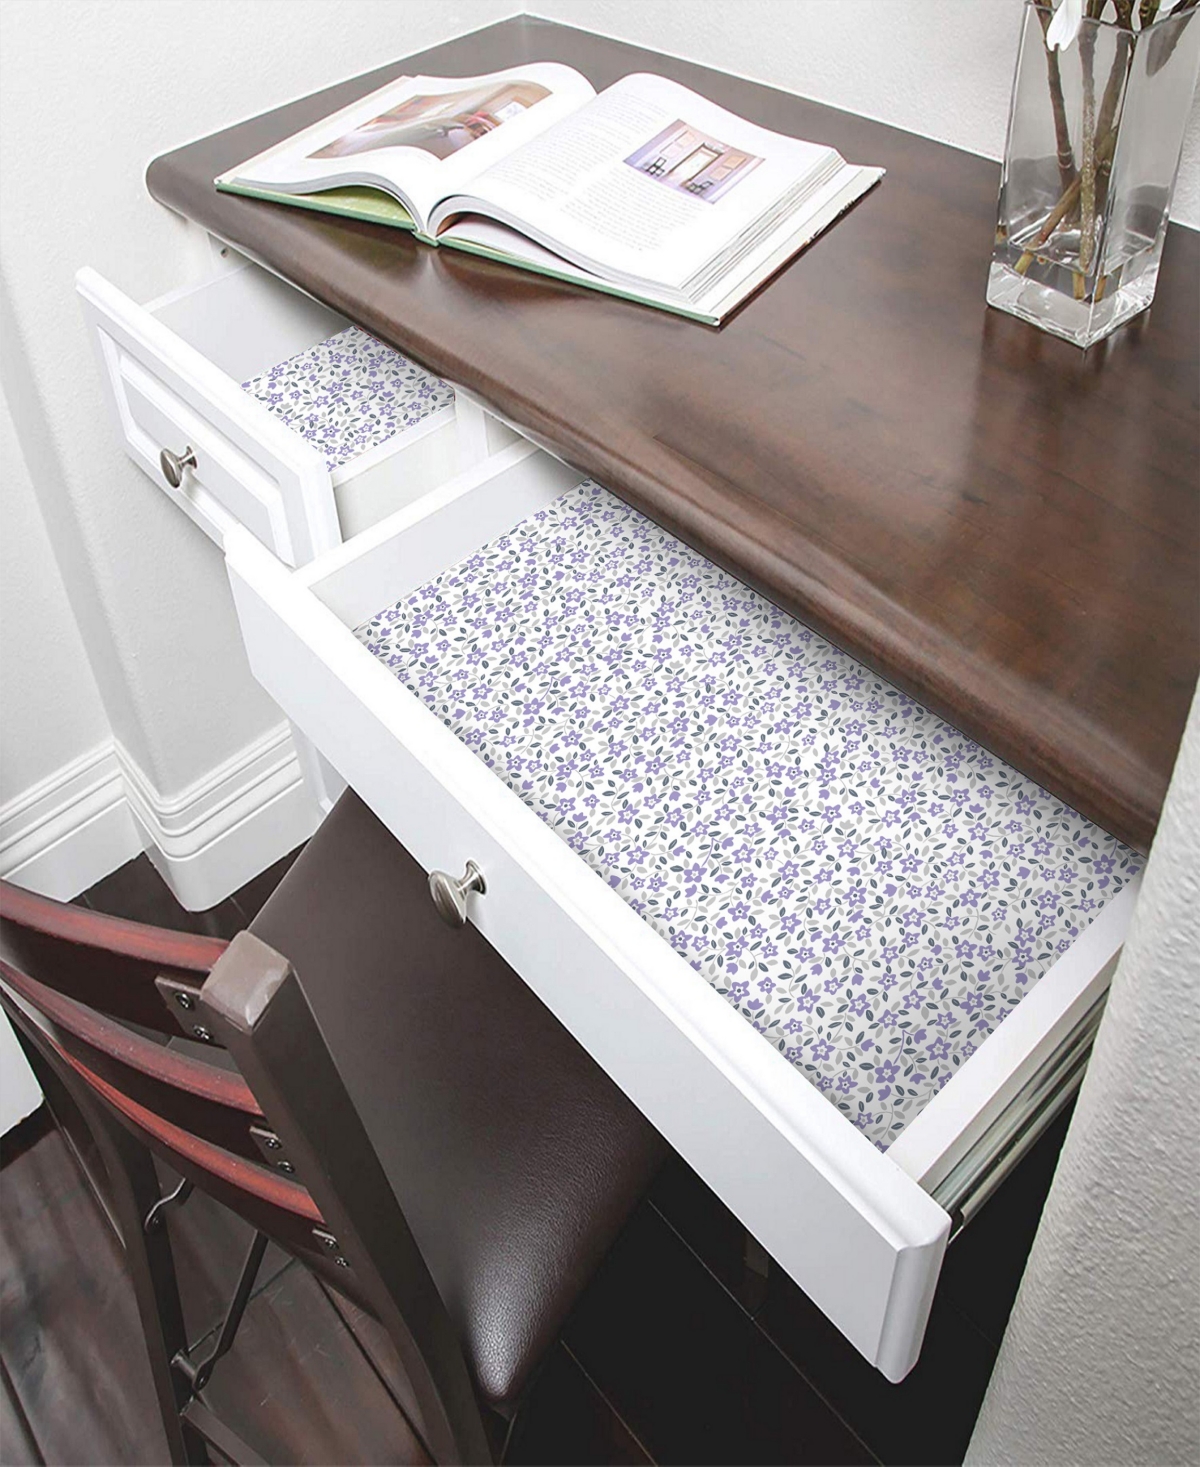 Shop Smart Design Bonded Grip Shelf Liner, 12" X 10' Roll In Lavender Wildflower